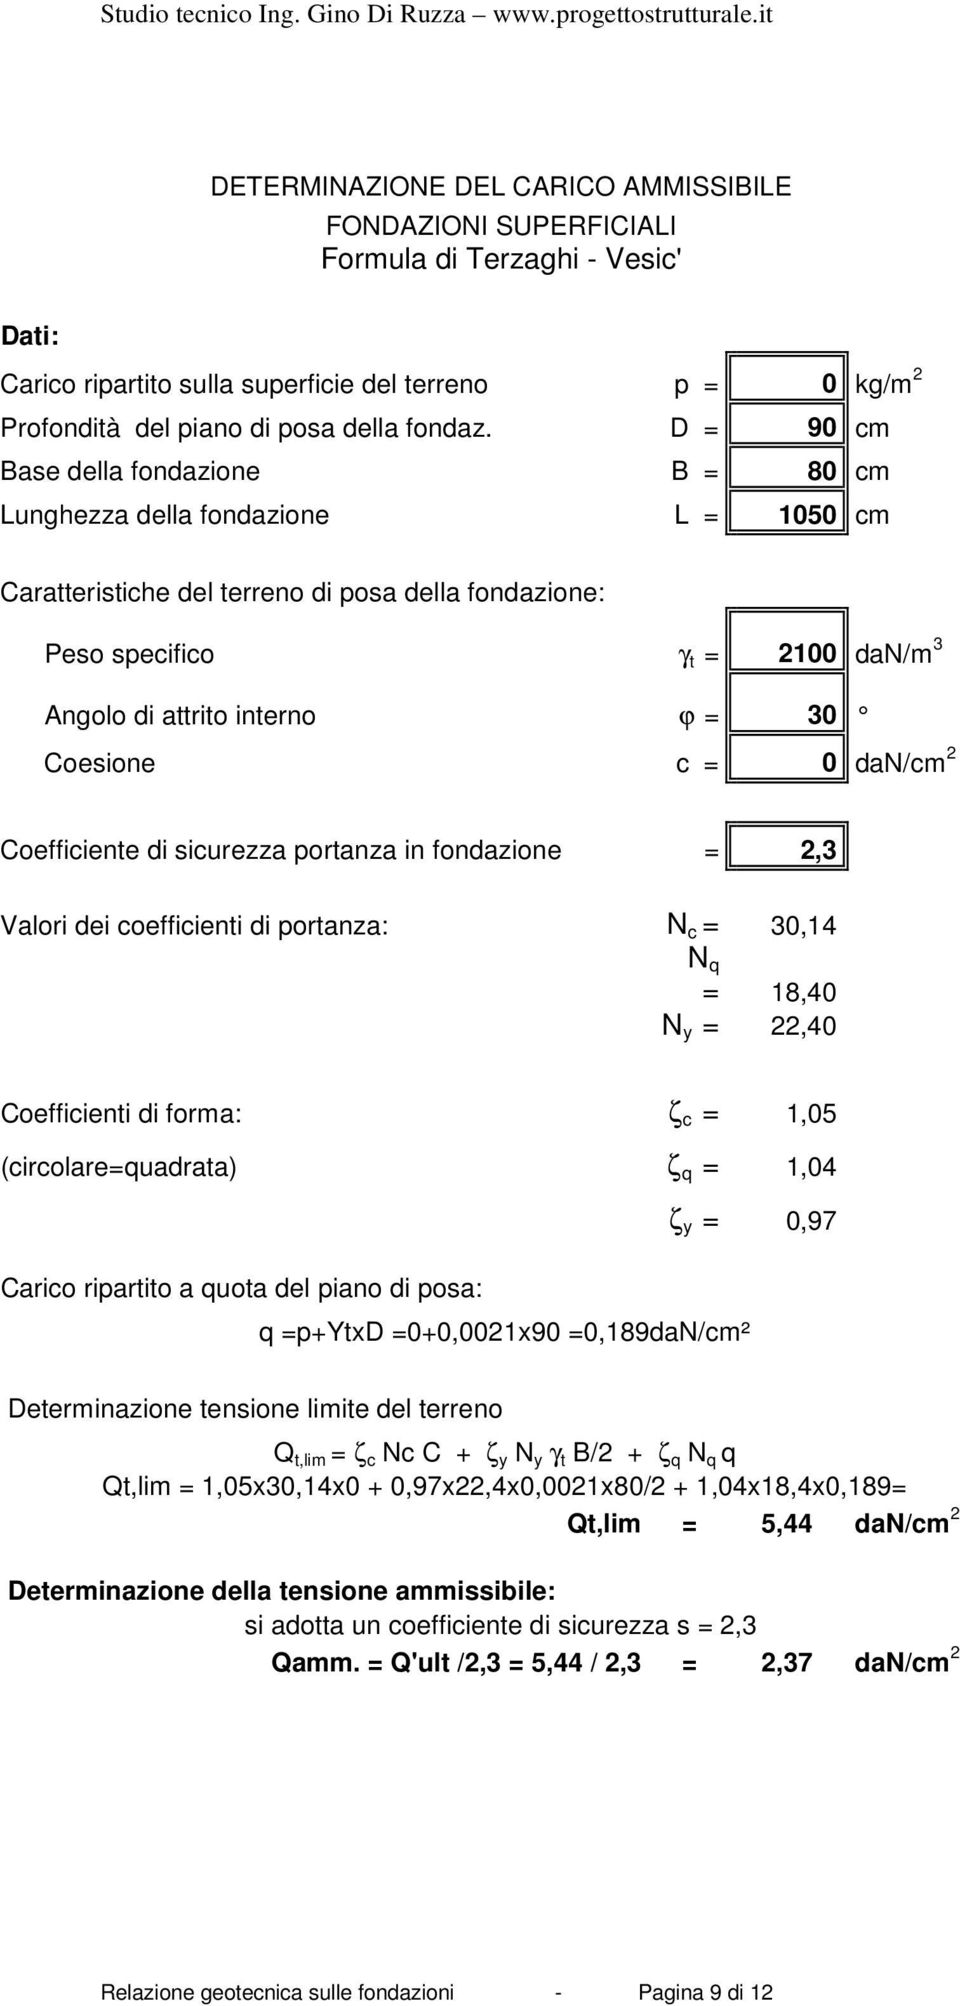 30 Coesione c = 0 dan/cm 2 Coefficiente di sicurezza portanza in fondazione = 2,3 Valori dei coefficienti di portanza: N c = 30,14 N q = 18,40 N y = 22,40 Coefficienti di forma: ζ c = 1,05